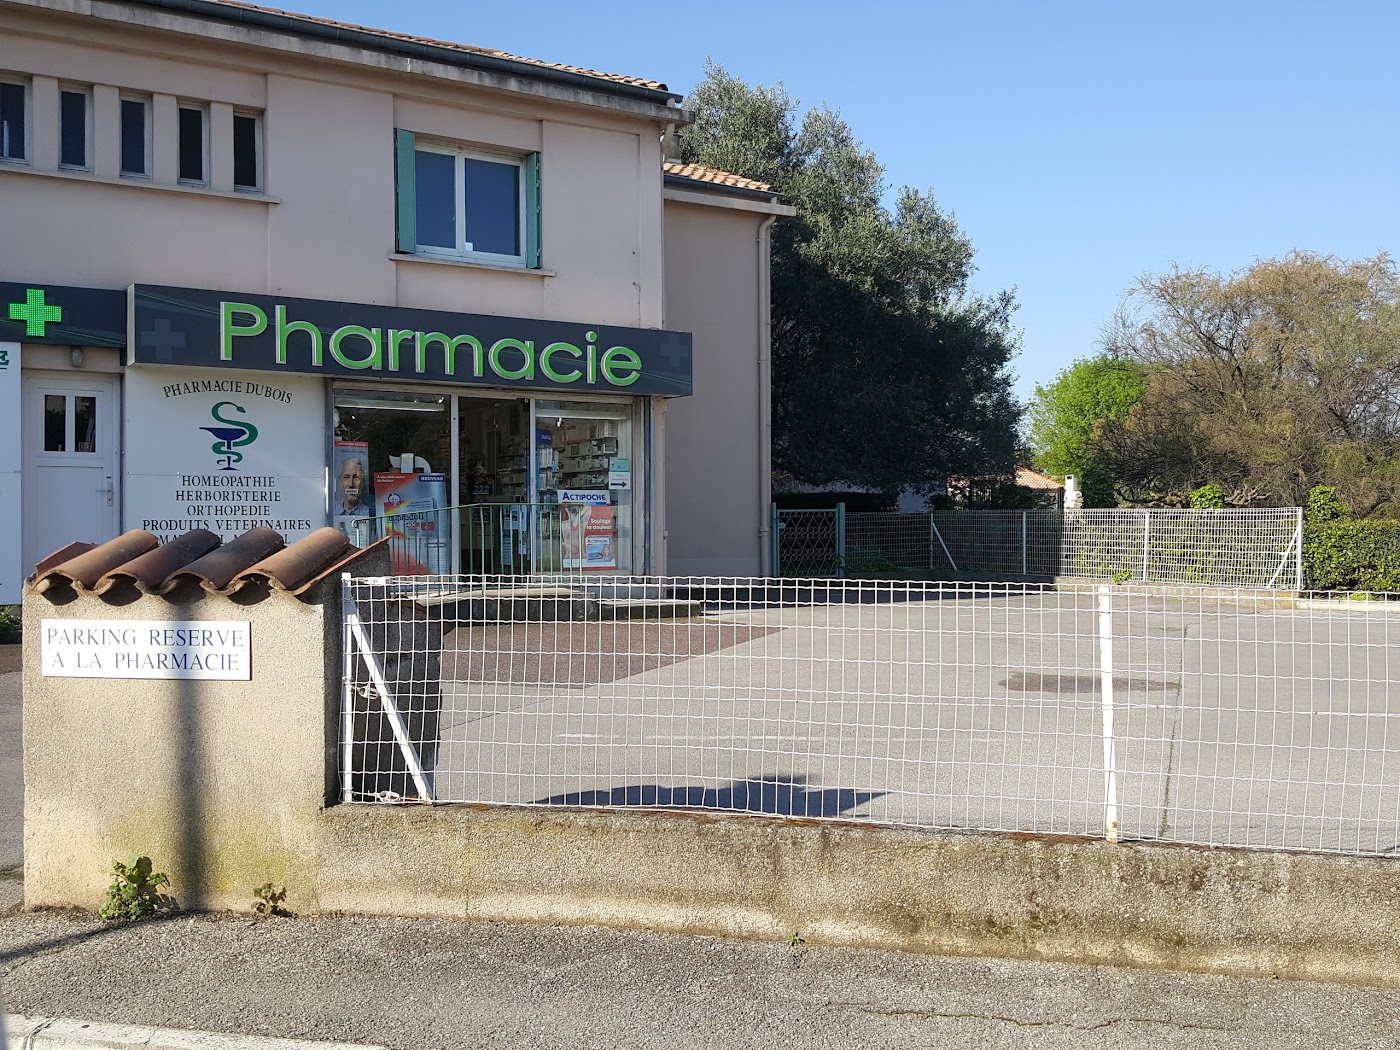 Pharmacie Dubois-Barral